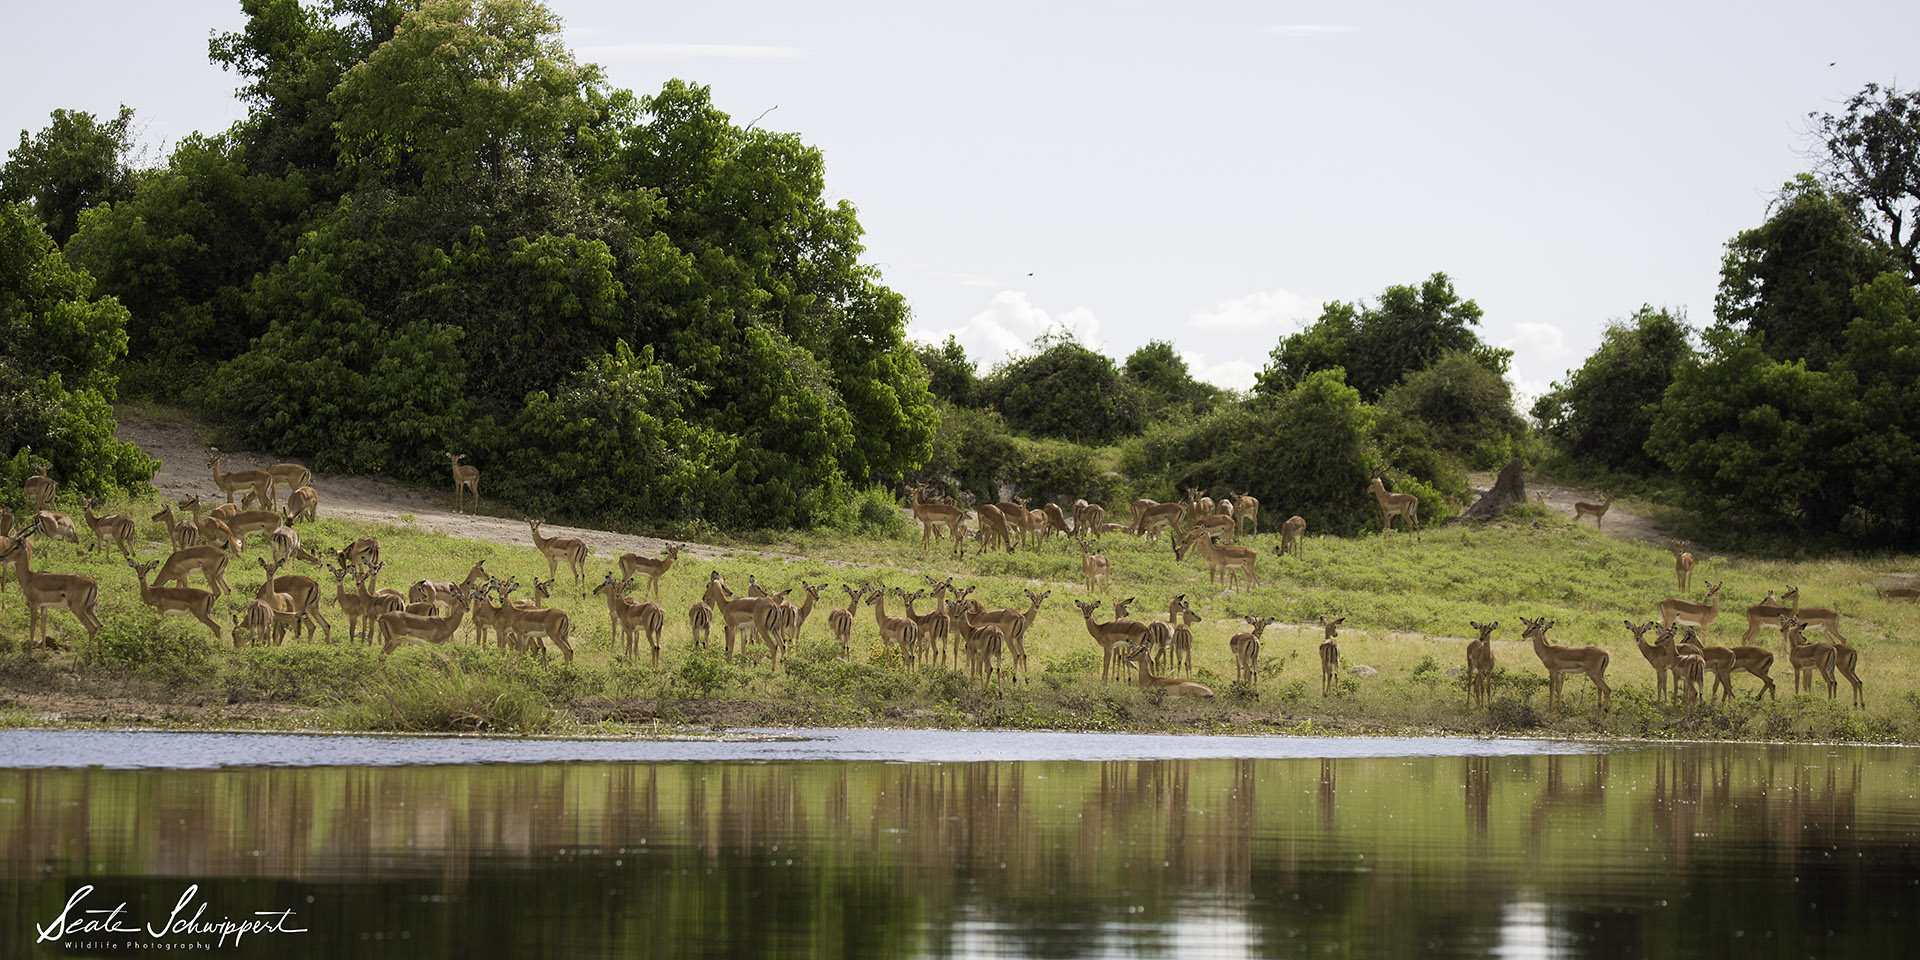 Zambezi wildernesses – Mudumu & Nkasa Rupara National Parks